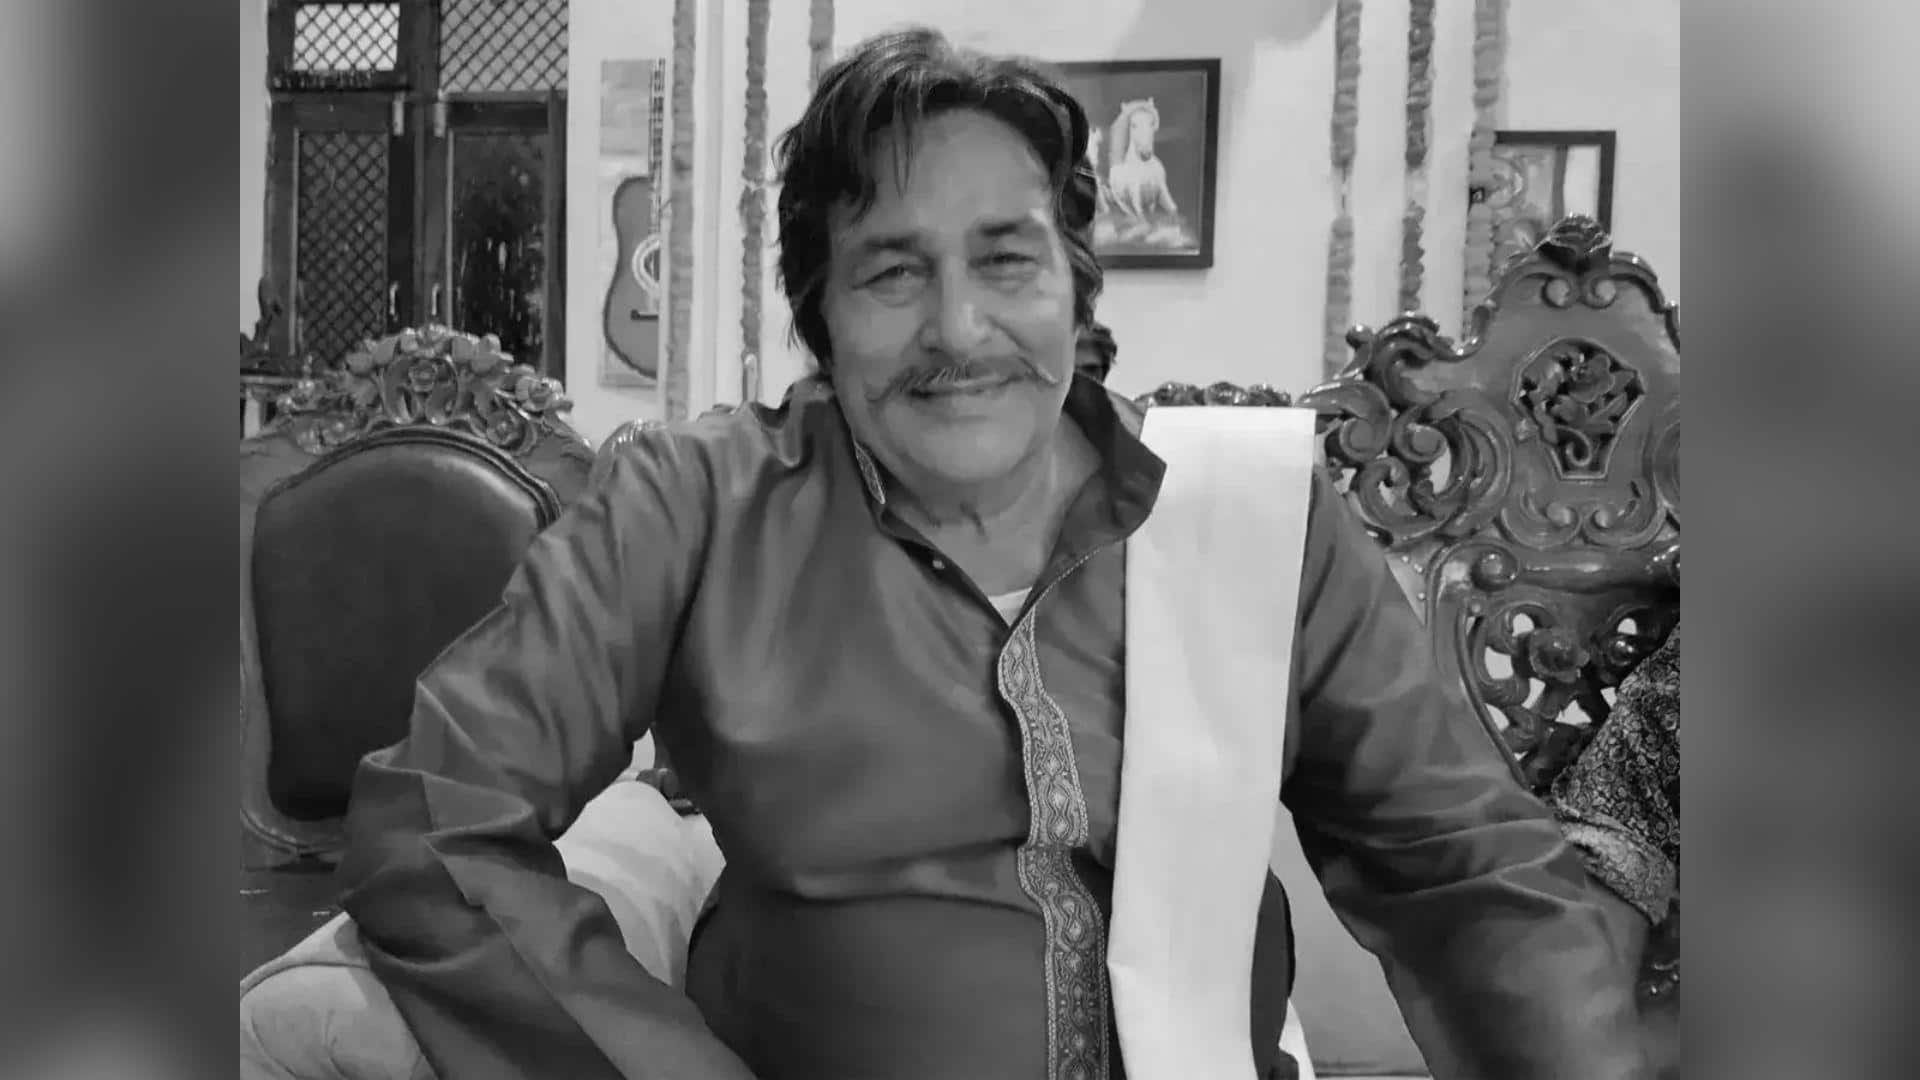 Bhojpuri actor Brijesh Tripathi dies: Reflecting on his best works